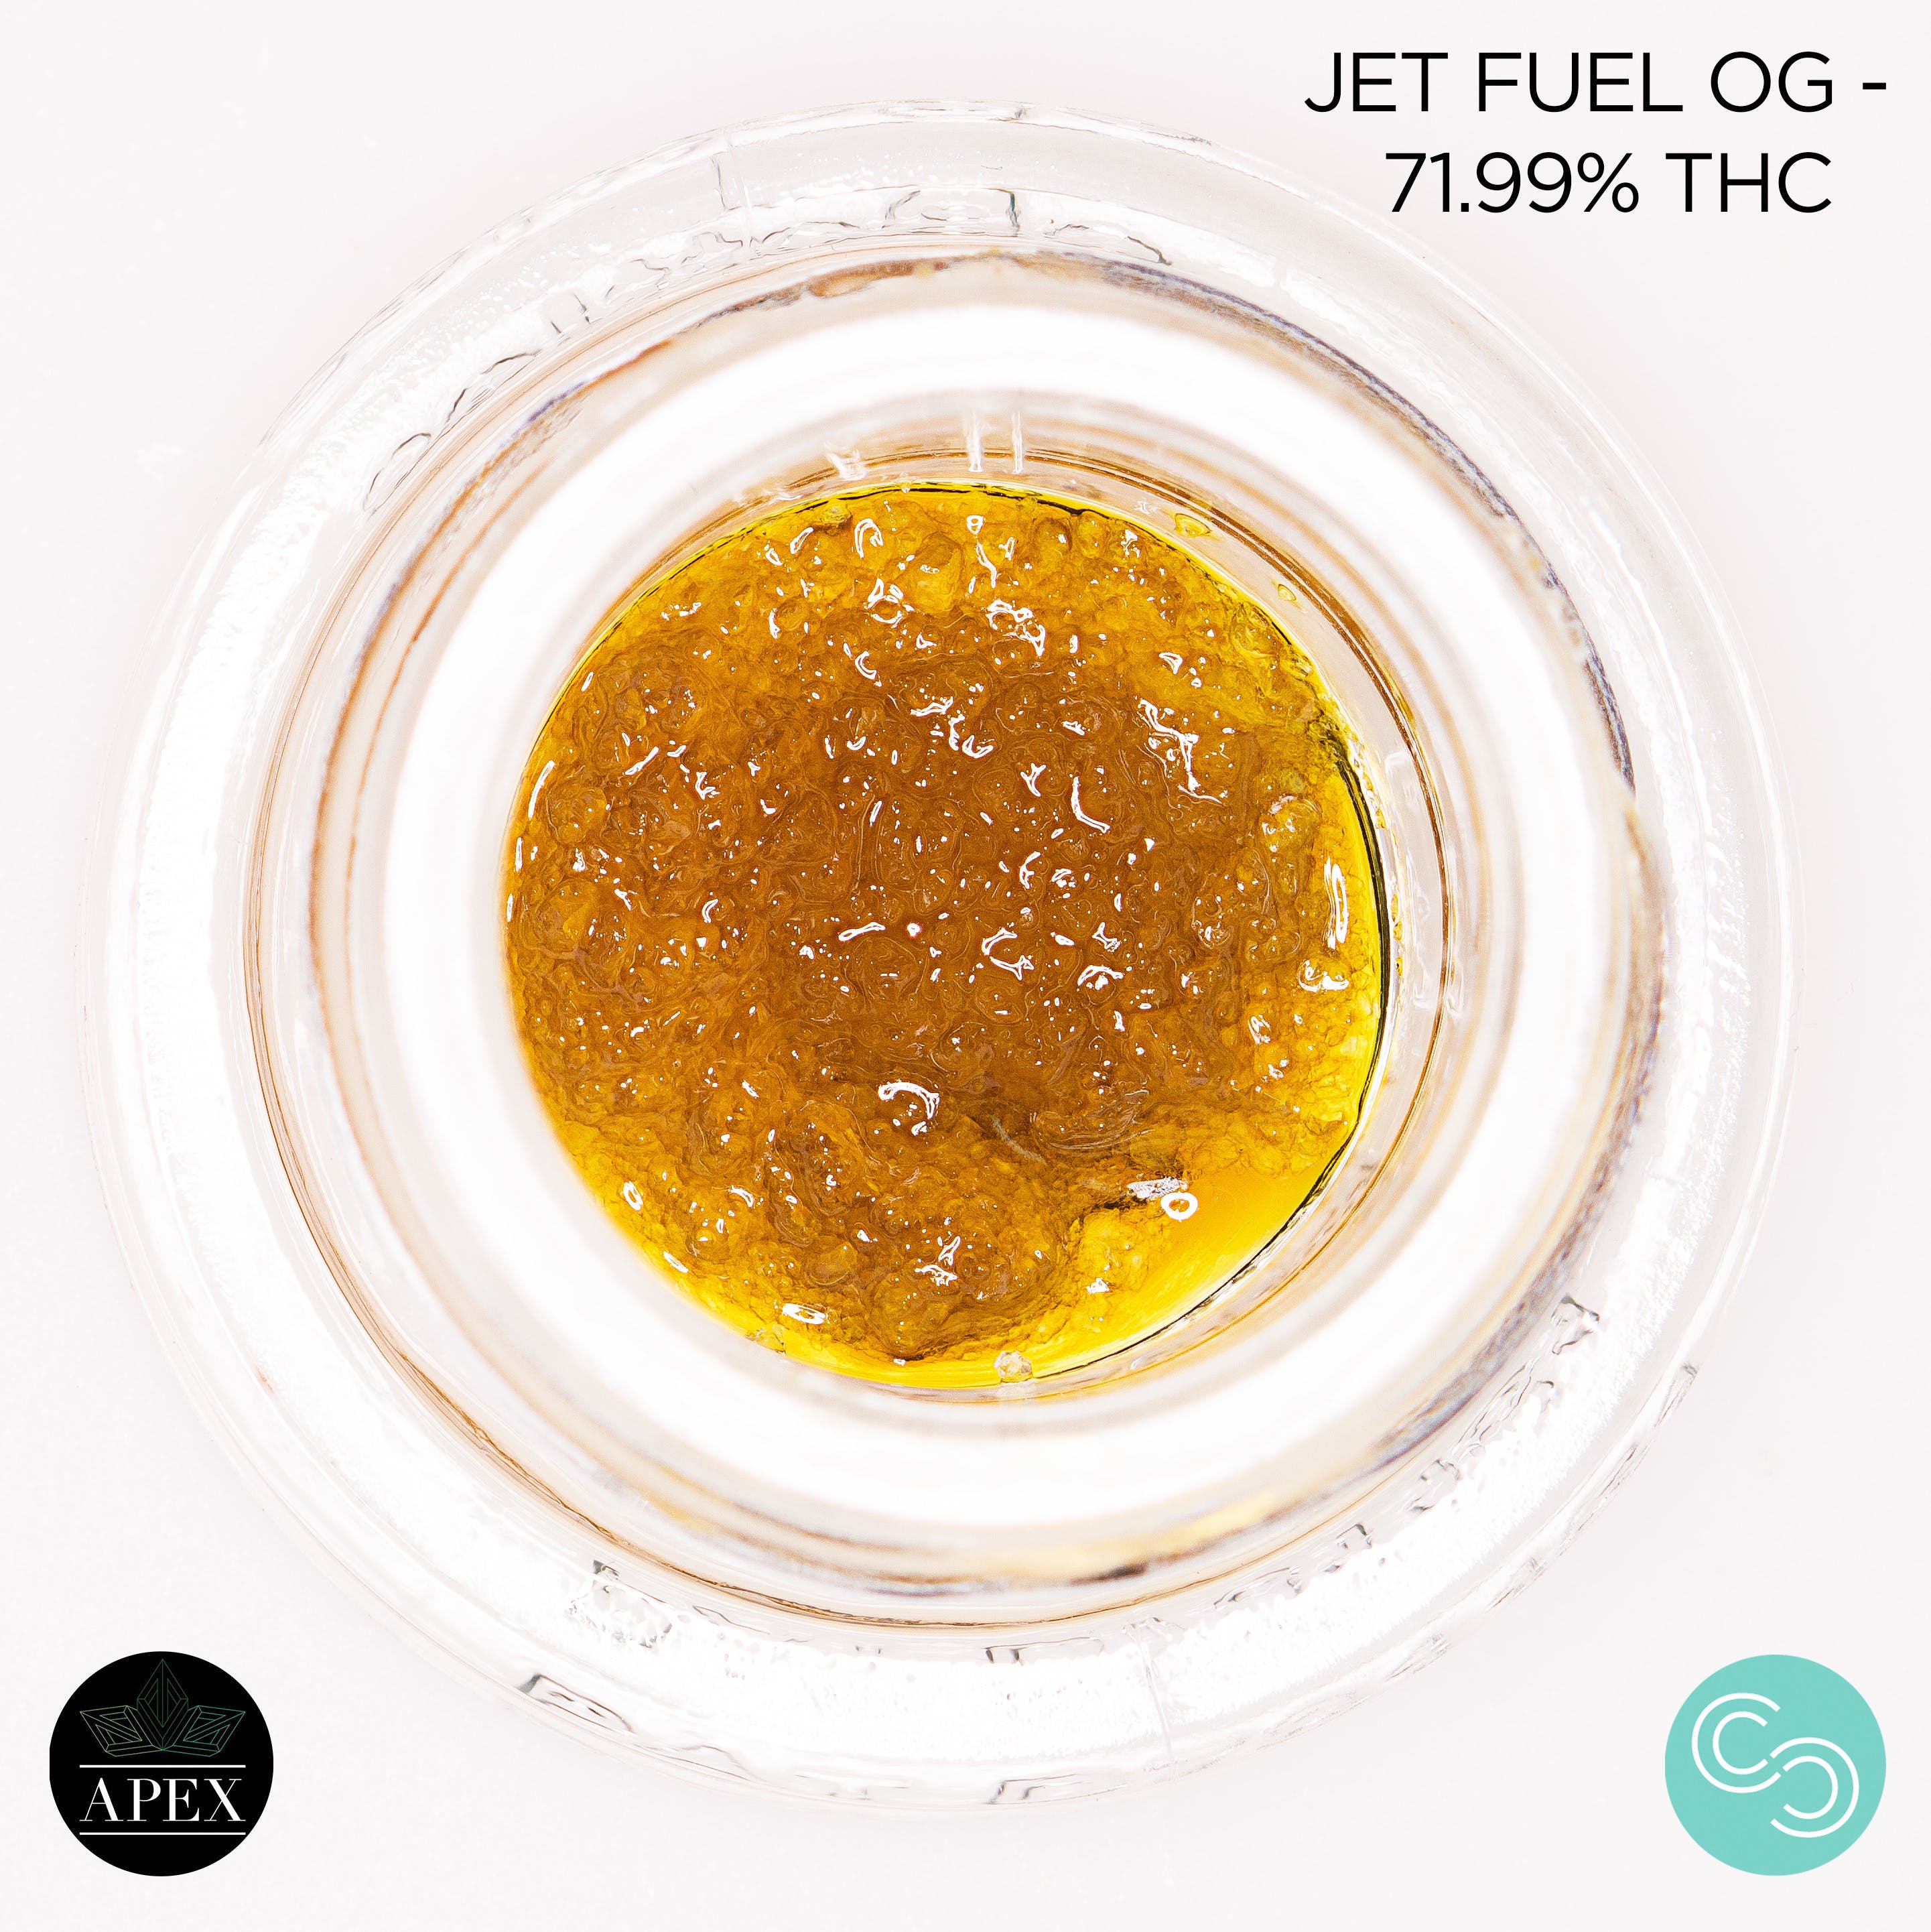 Apex - Jet Fuel OG - 71.99% THC